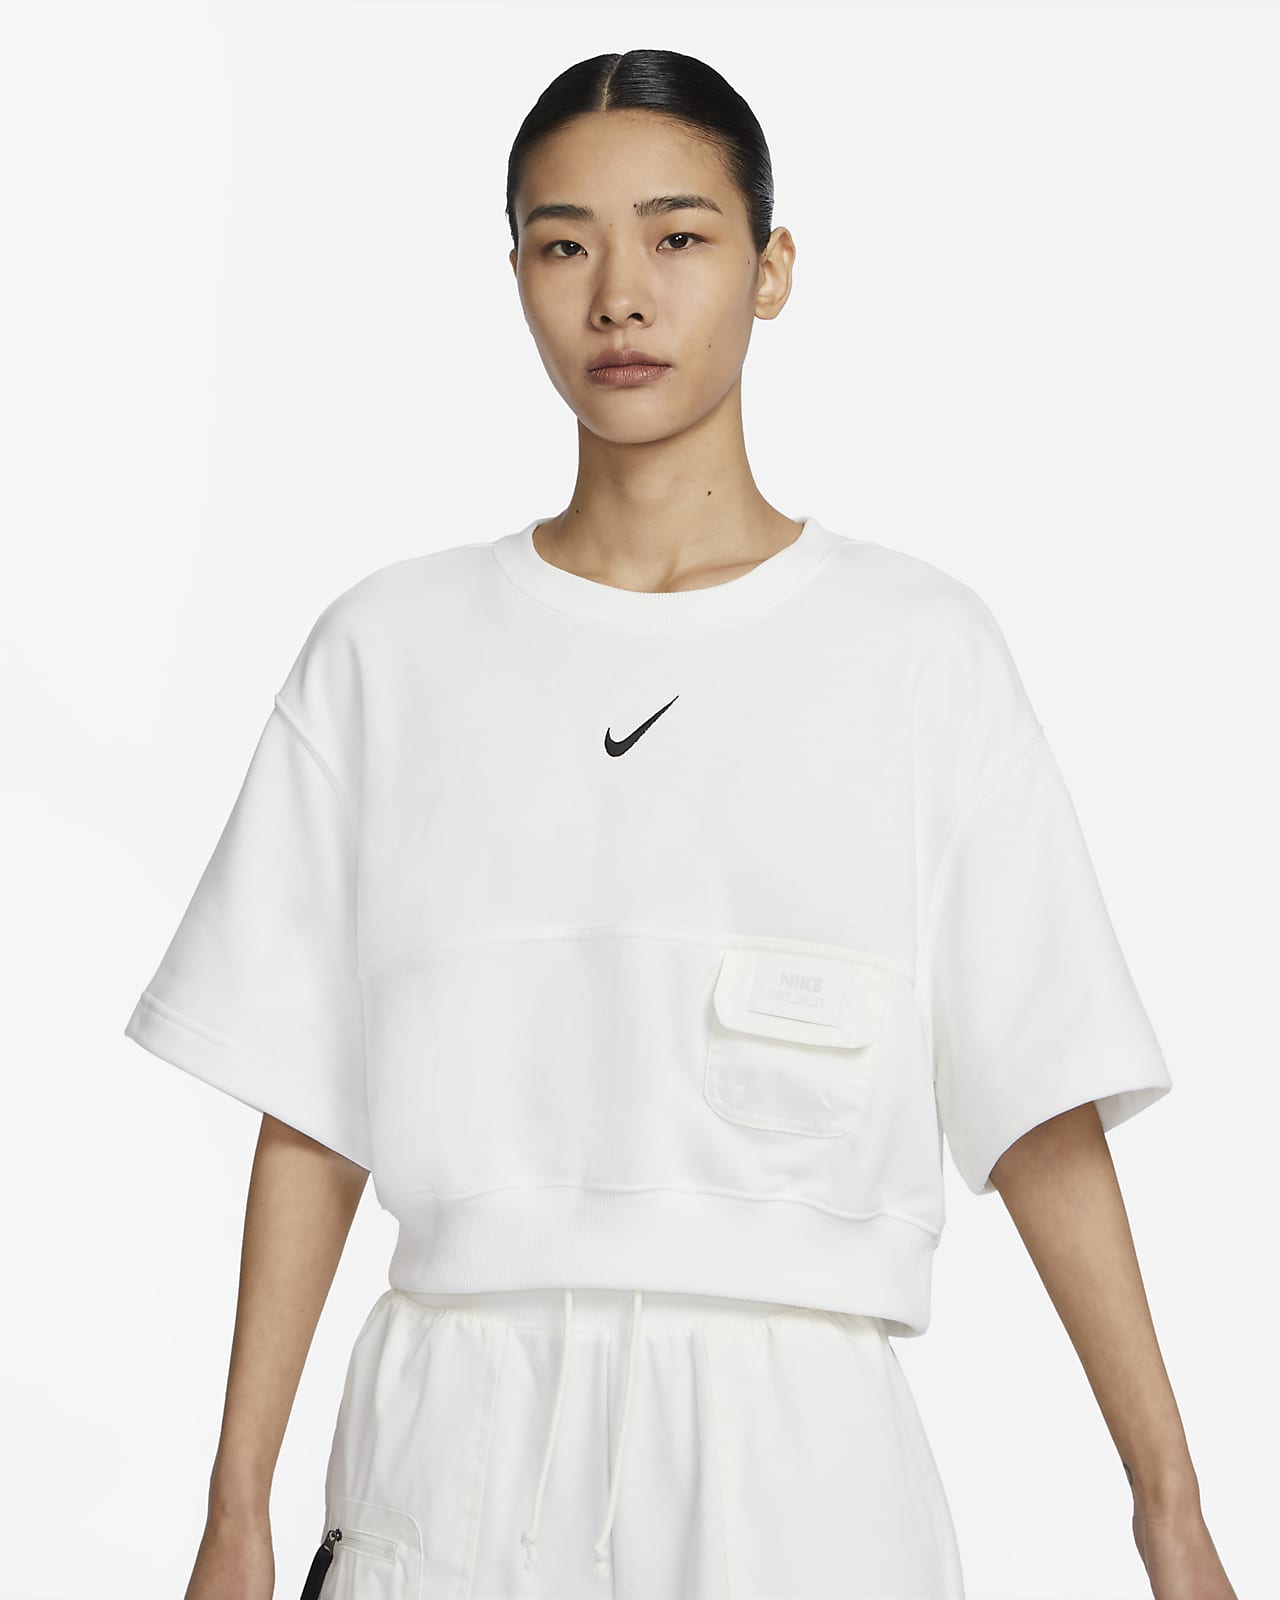 เสื้อแขนสั้นผ้าเฟรนช์เทรีผู้หญิง Nike Sportswear City Utility